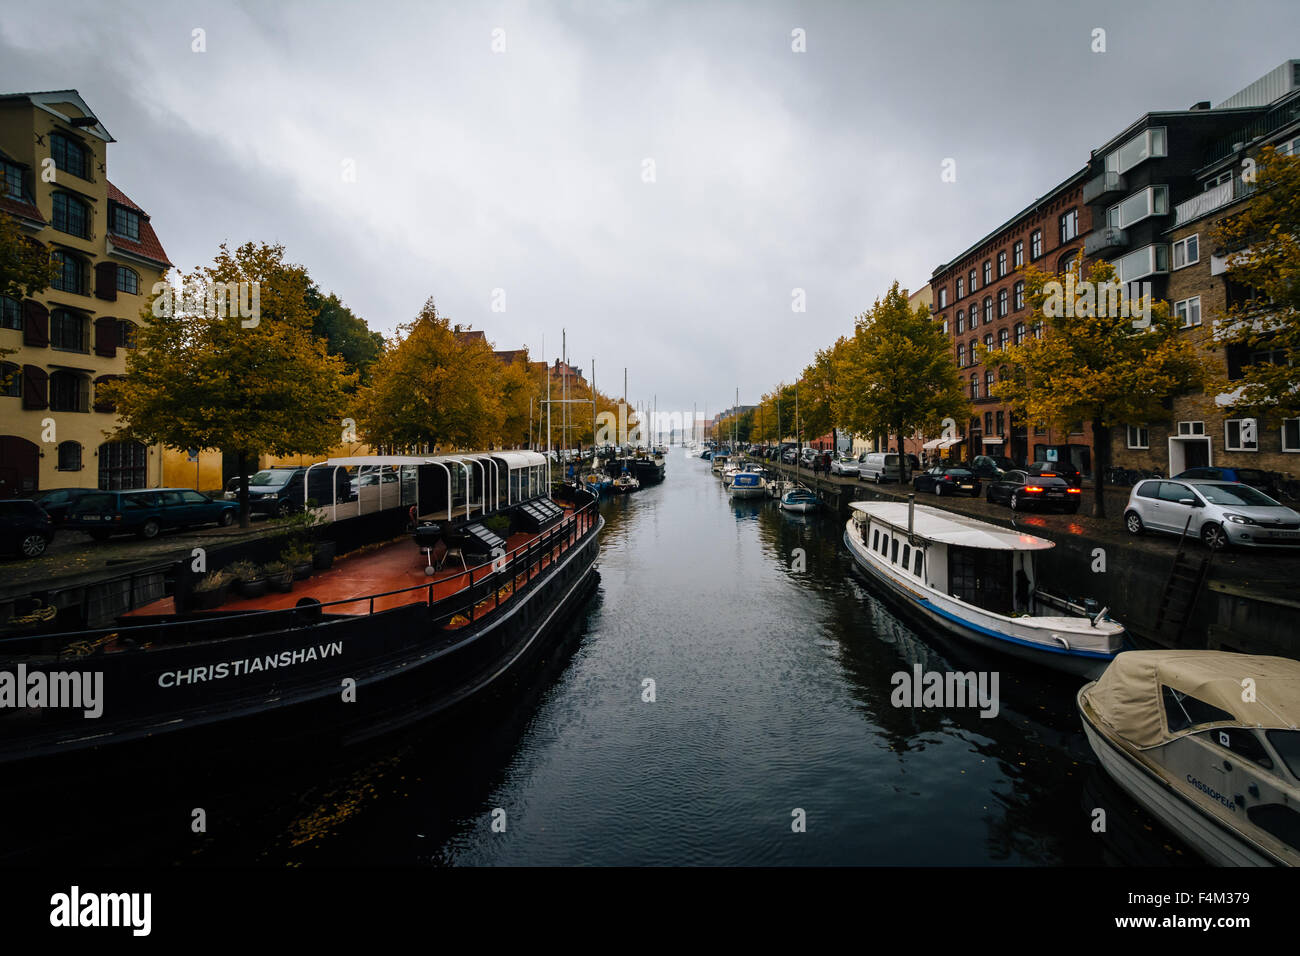 Herbstfarbe und Boote entlang des Kanals von Christianshavn, in Christianshavn, Kopenhagen, Dänemark. Stockfoto